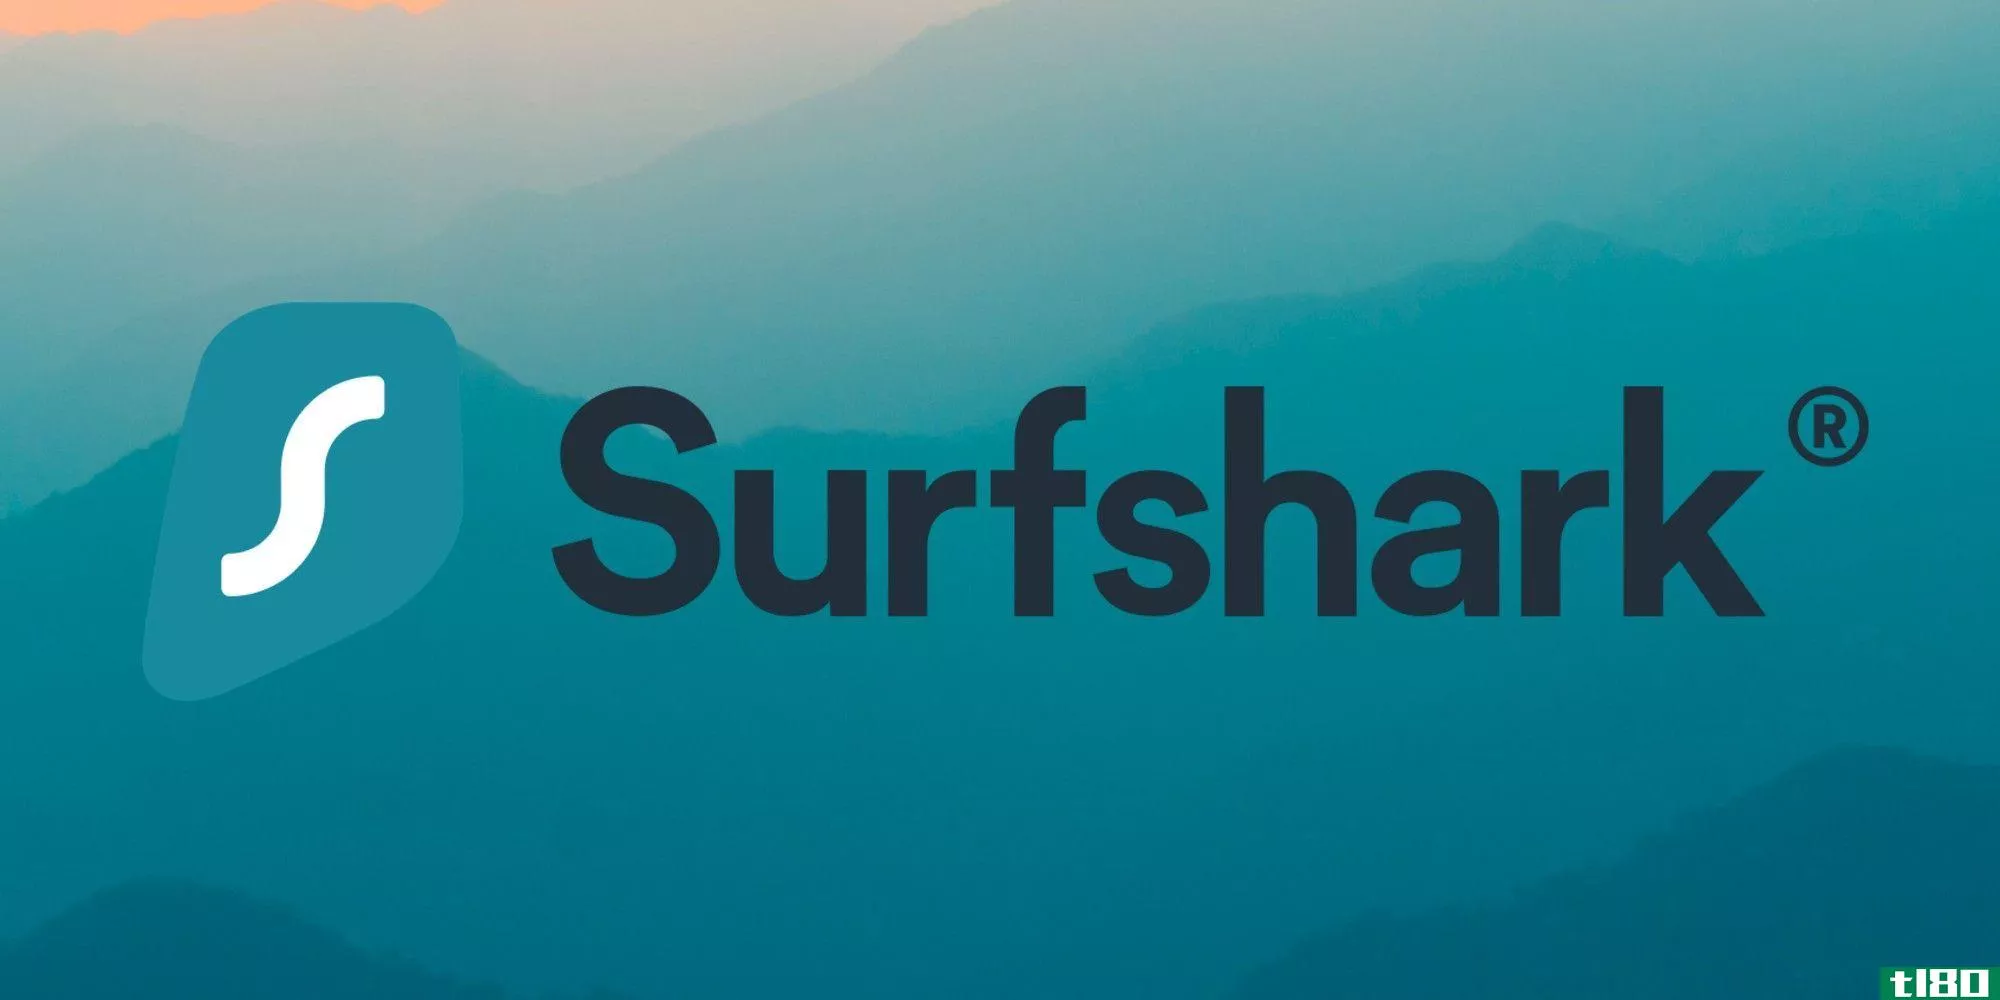 surfshark logo large